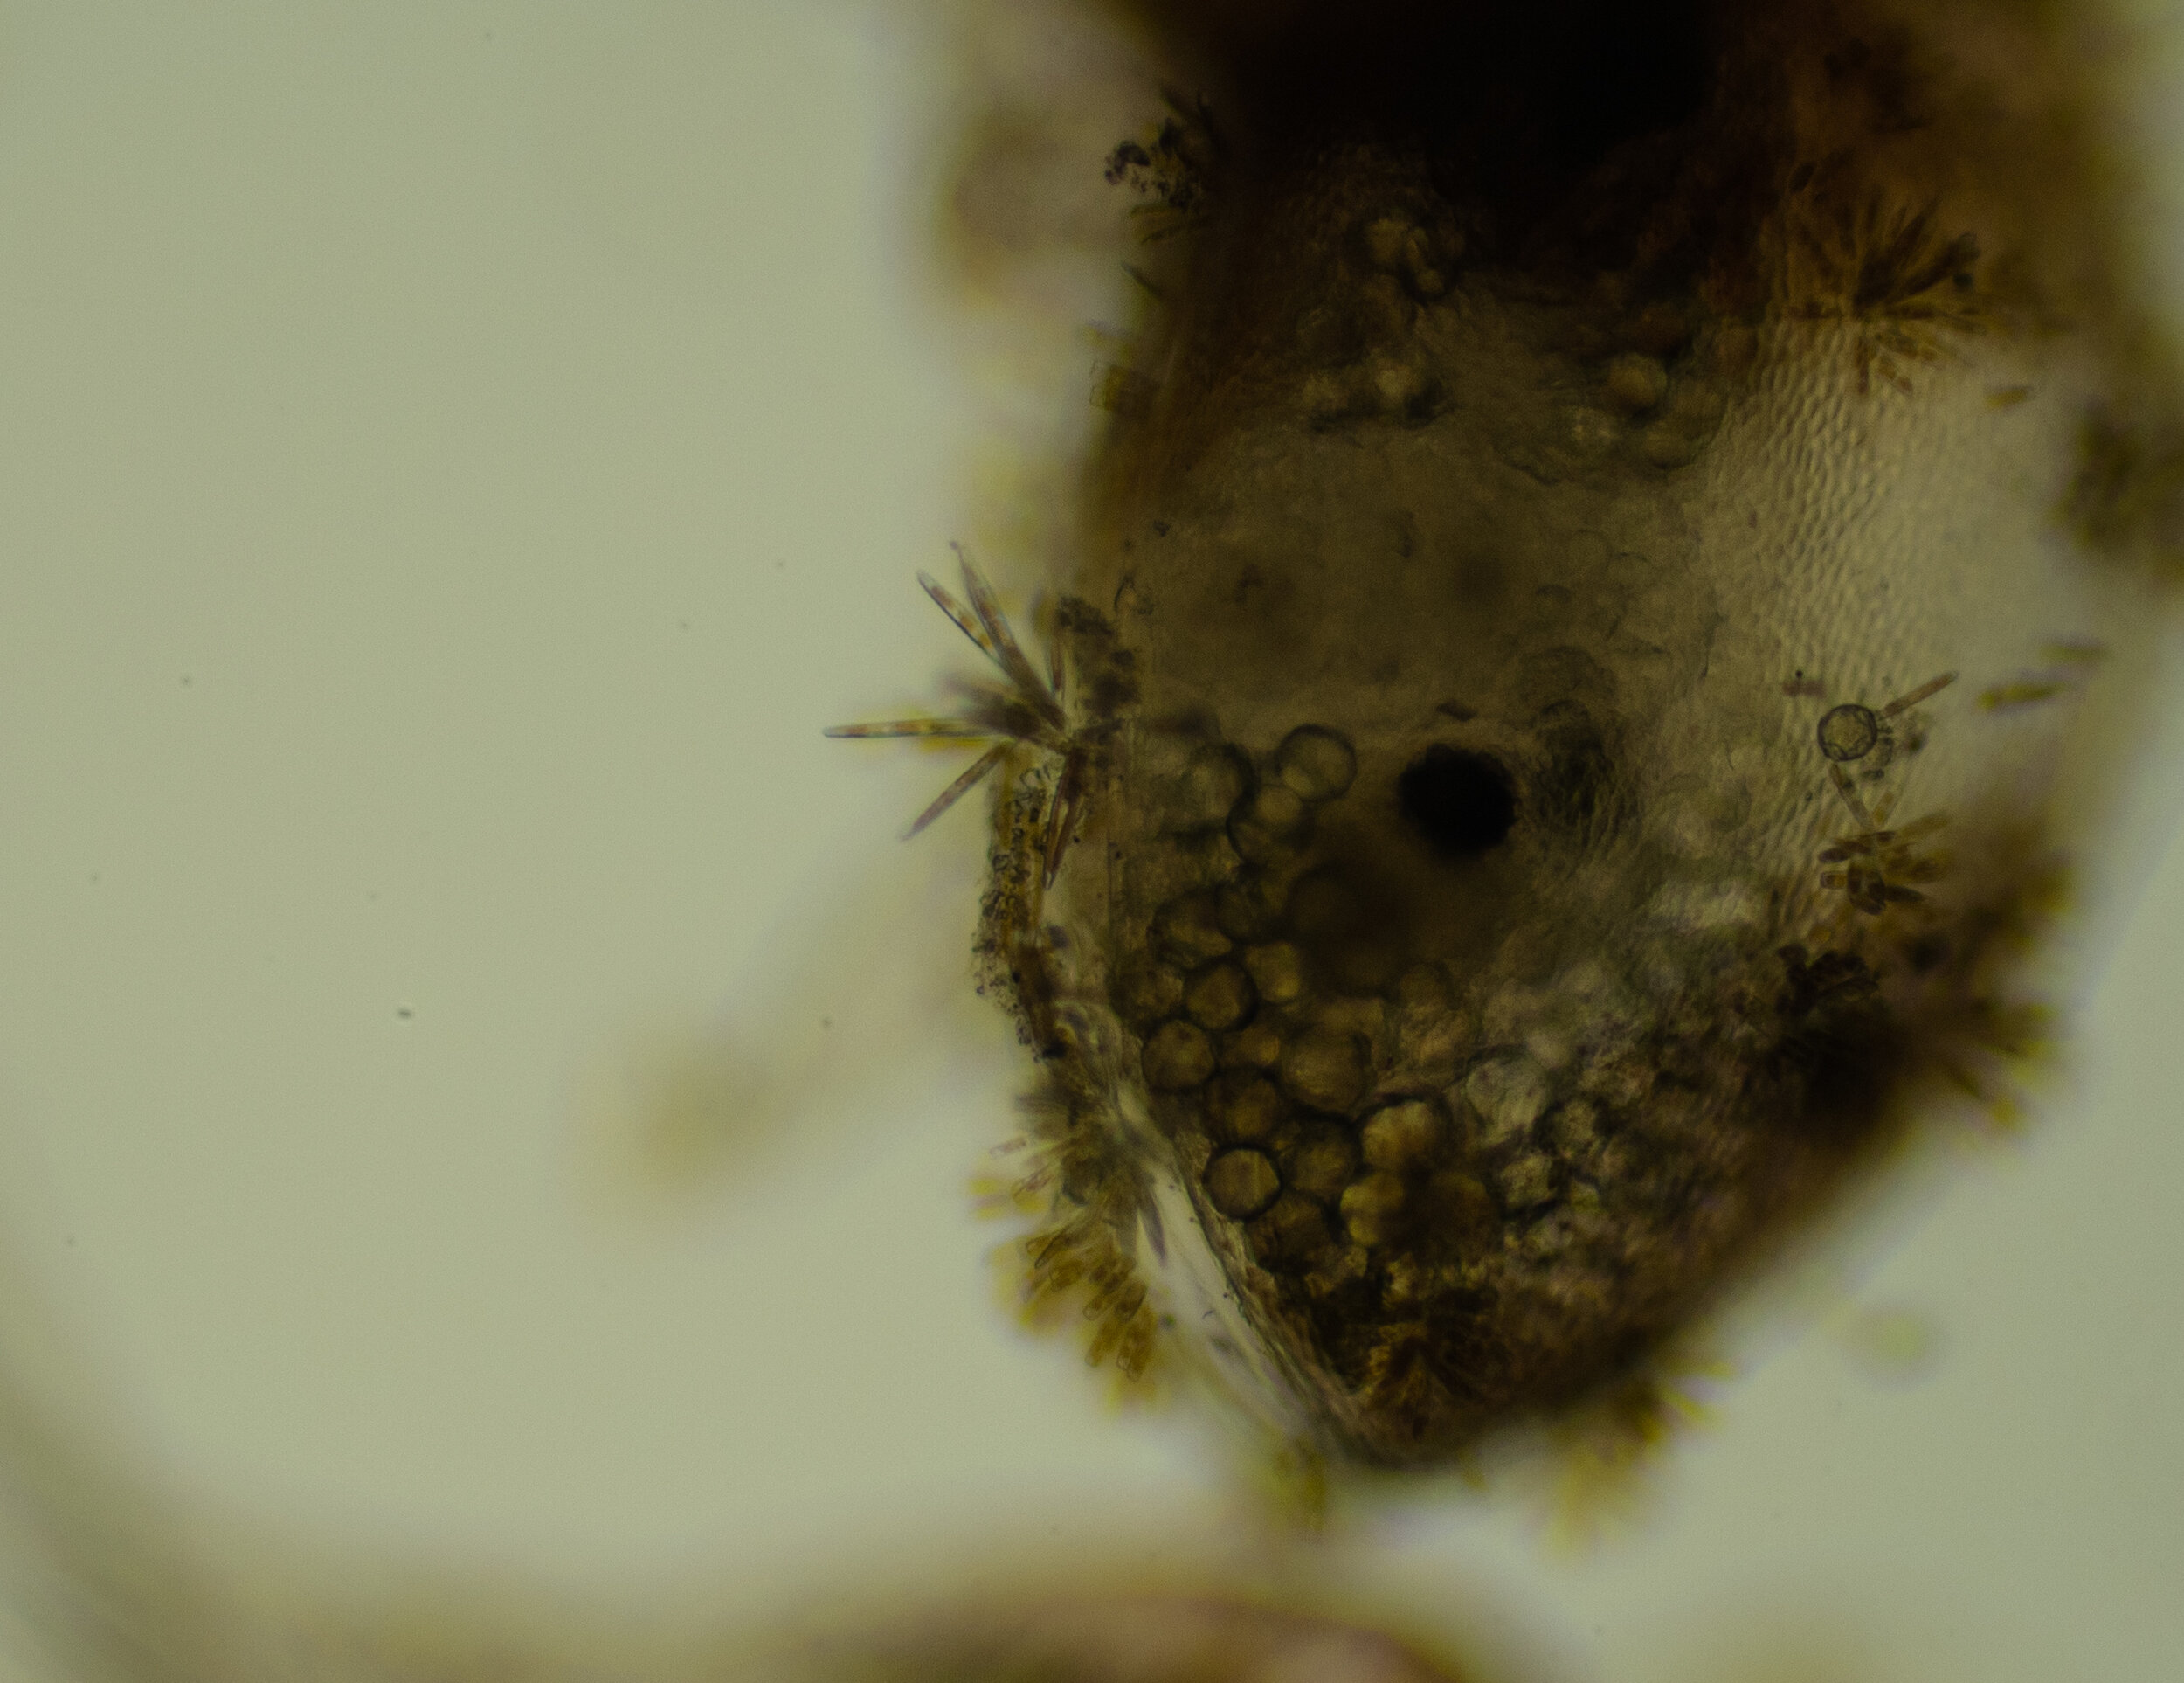 Barnacle Cyprid Larvae